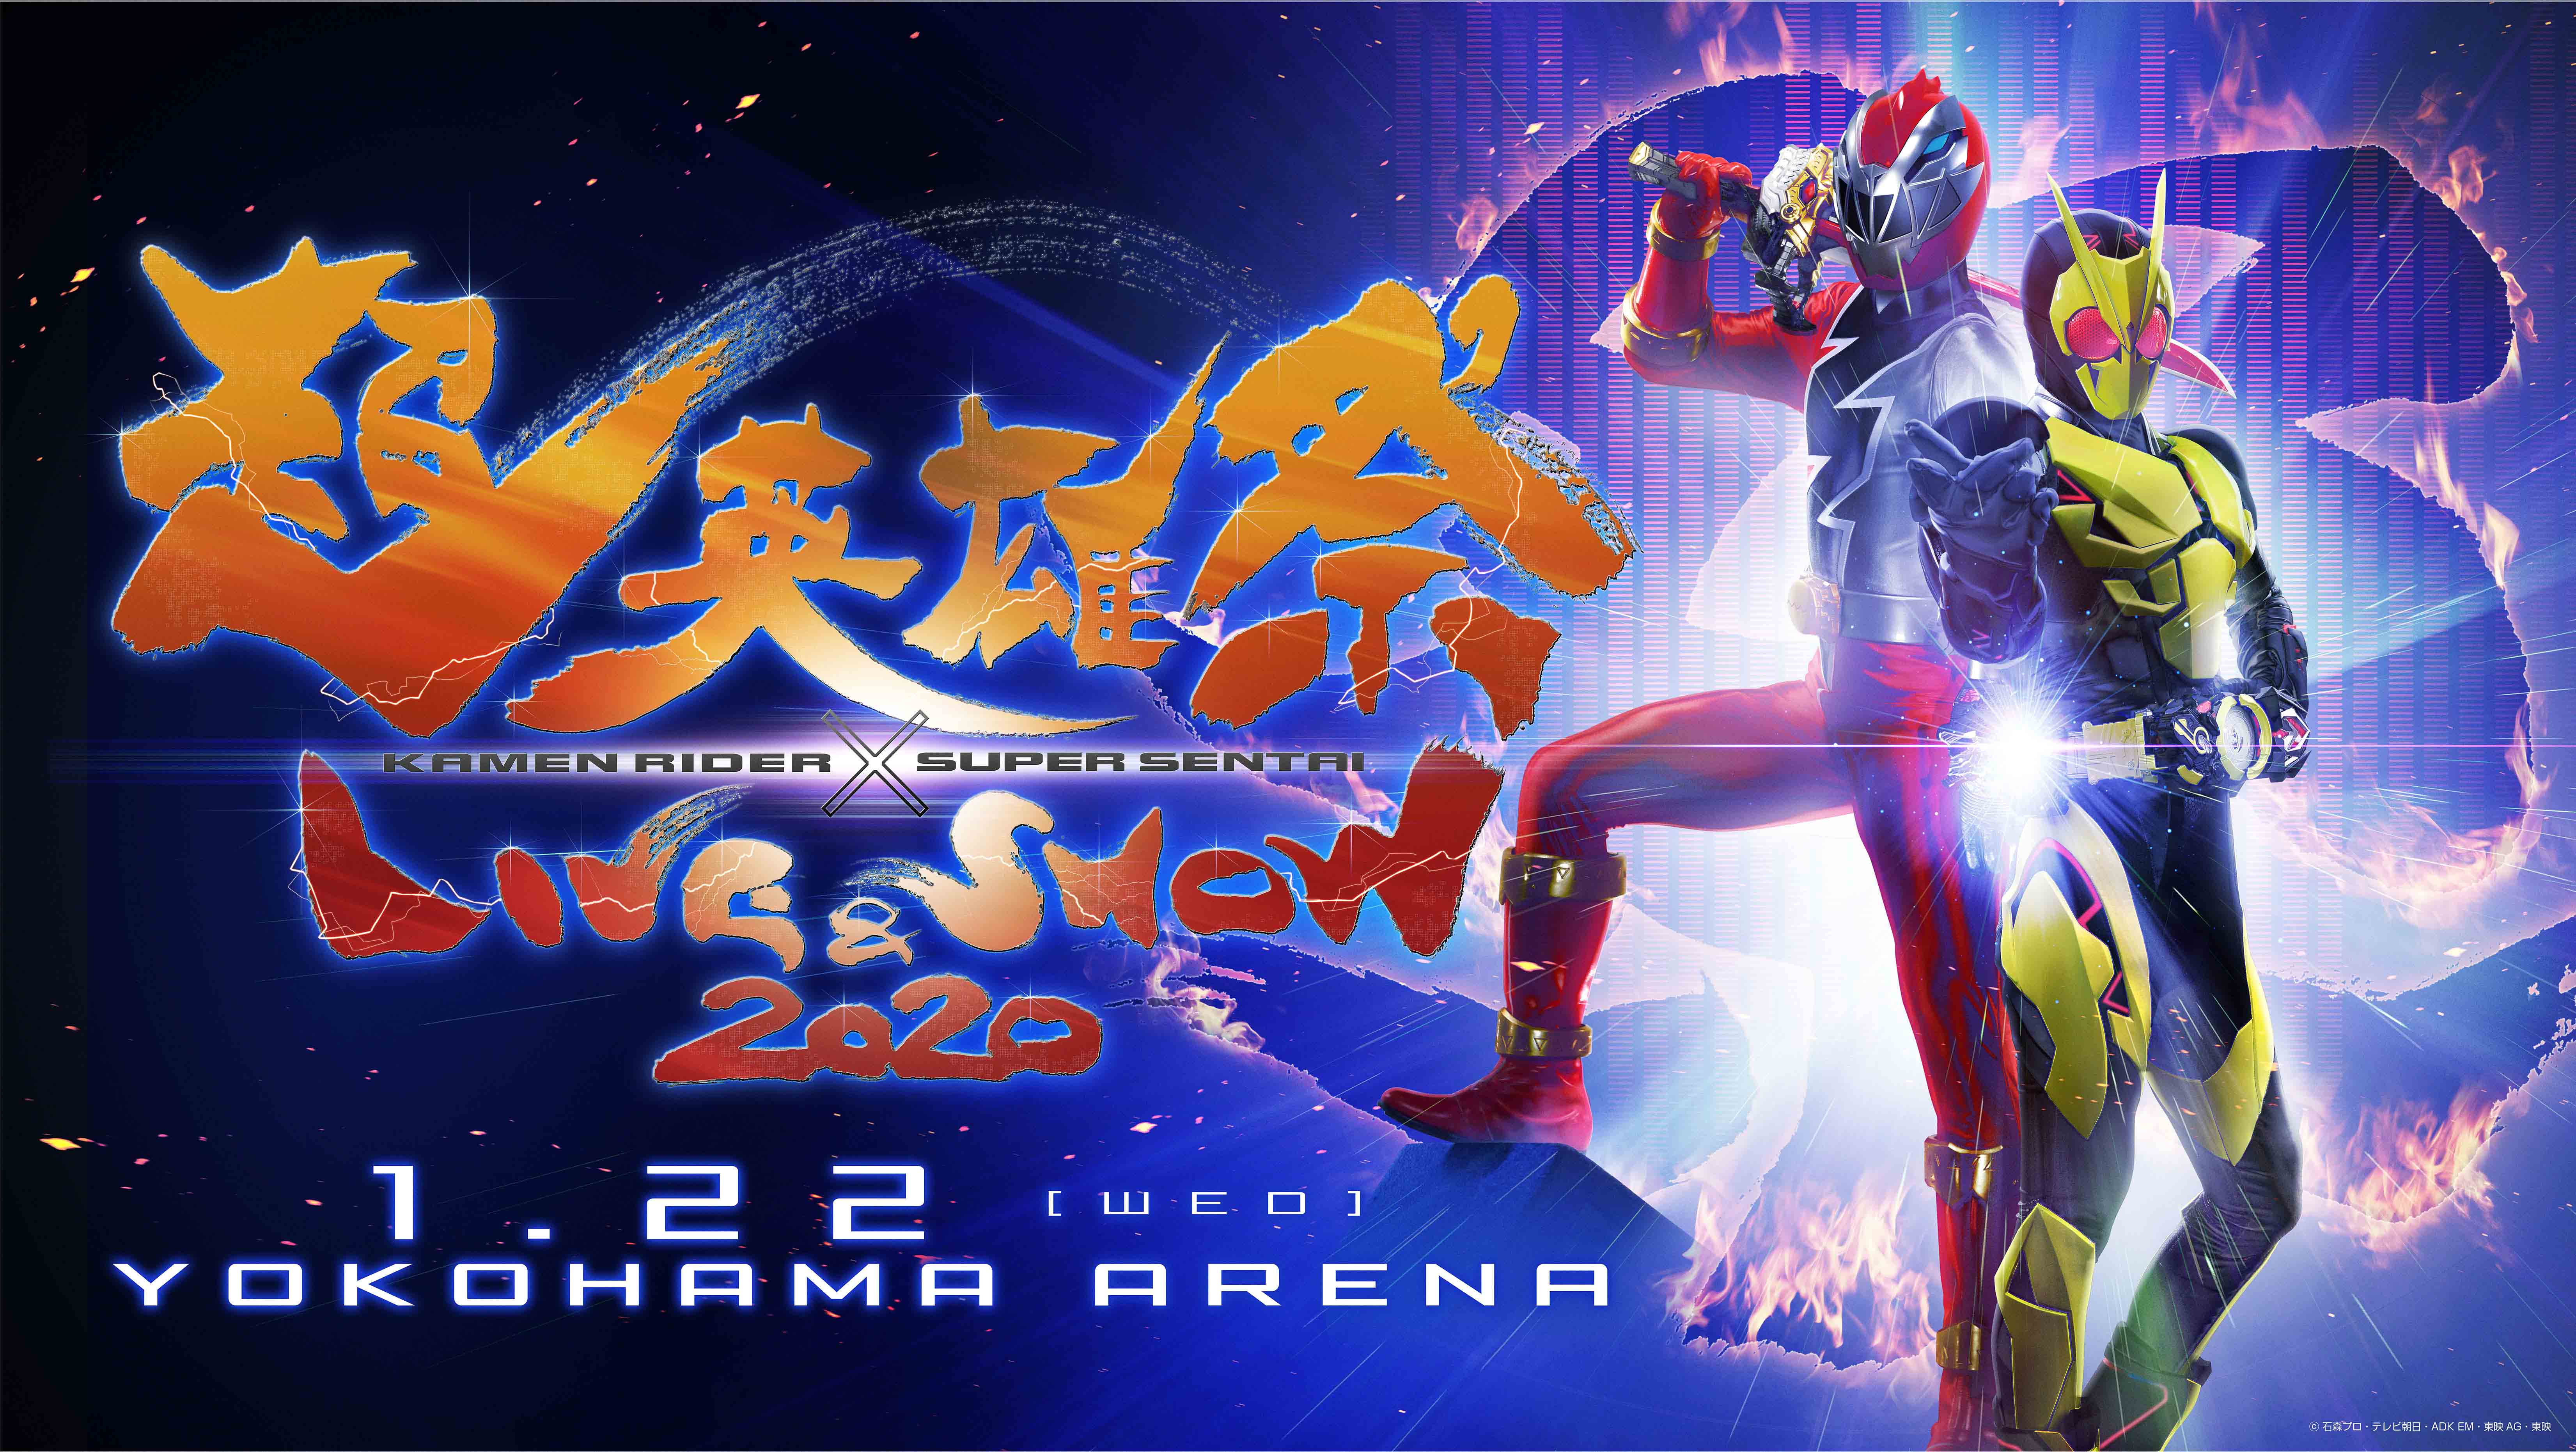 令和初 スーパーヒーローによるお祭り 超英雄祭 Kamen Rider Super Sentai Live Show Auスマートパスプレミアム ビデオパスにてライブ配信決定 Kddi株式会社のプレスリリース